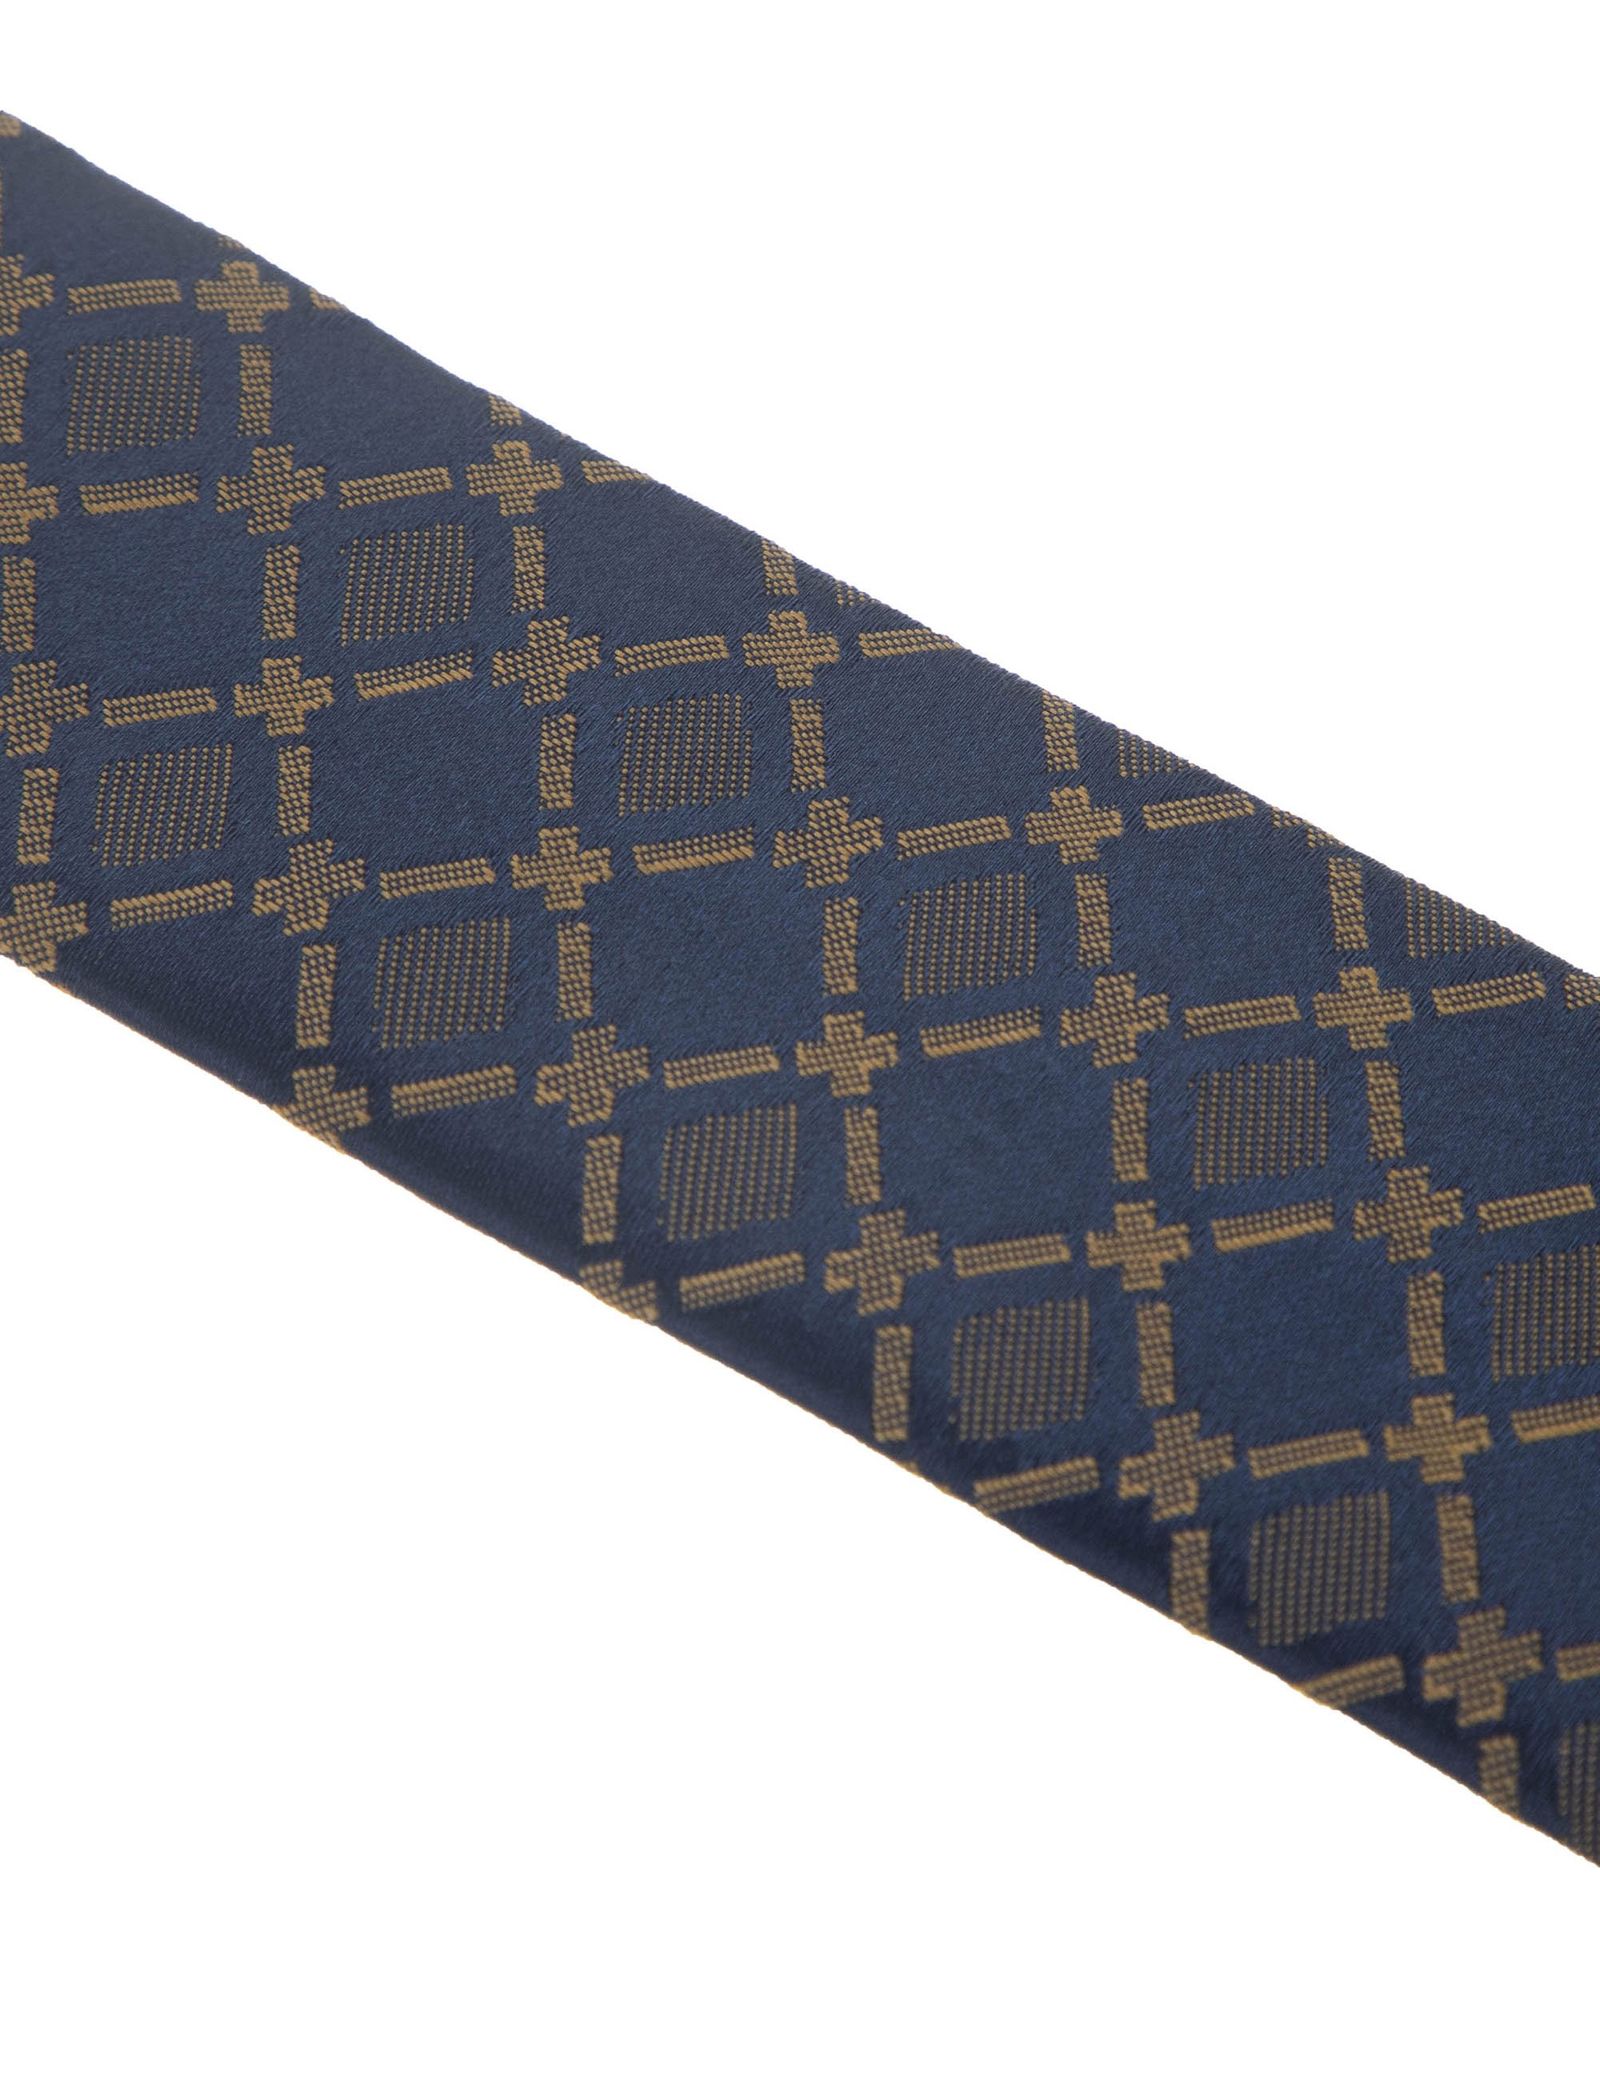 کراوات طرح دار مردانه طرح واید - پاترون تک سایز - چند رنگ - 4